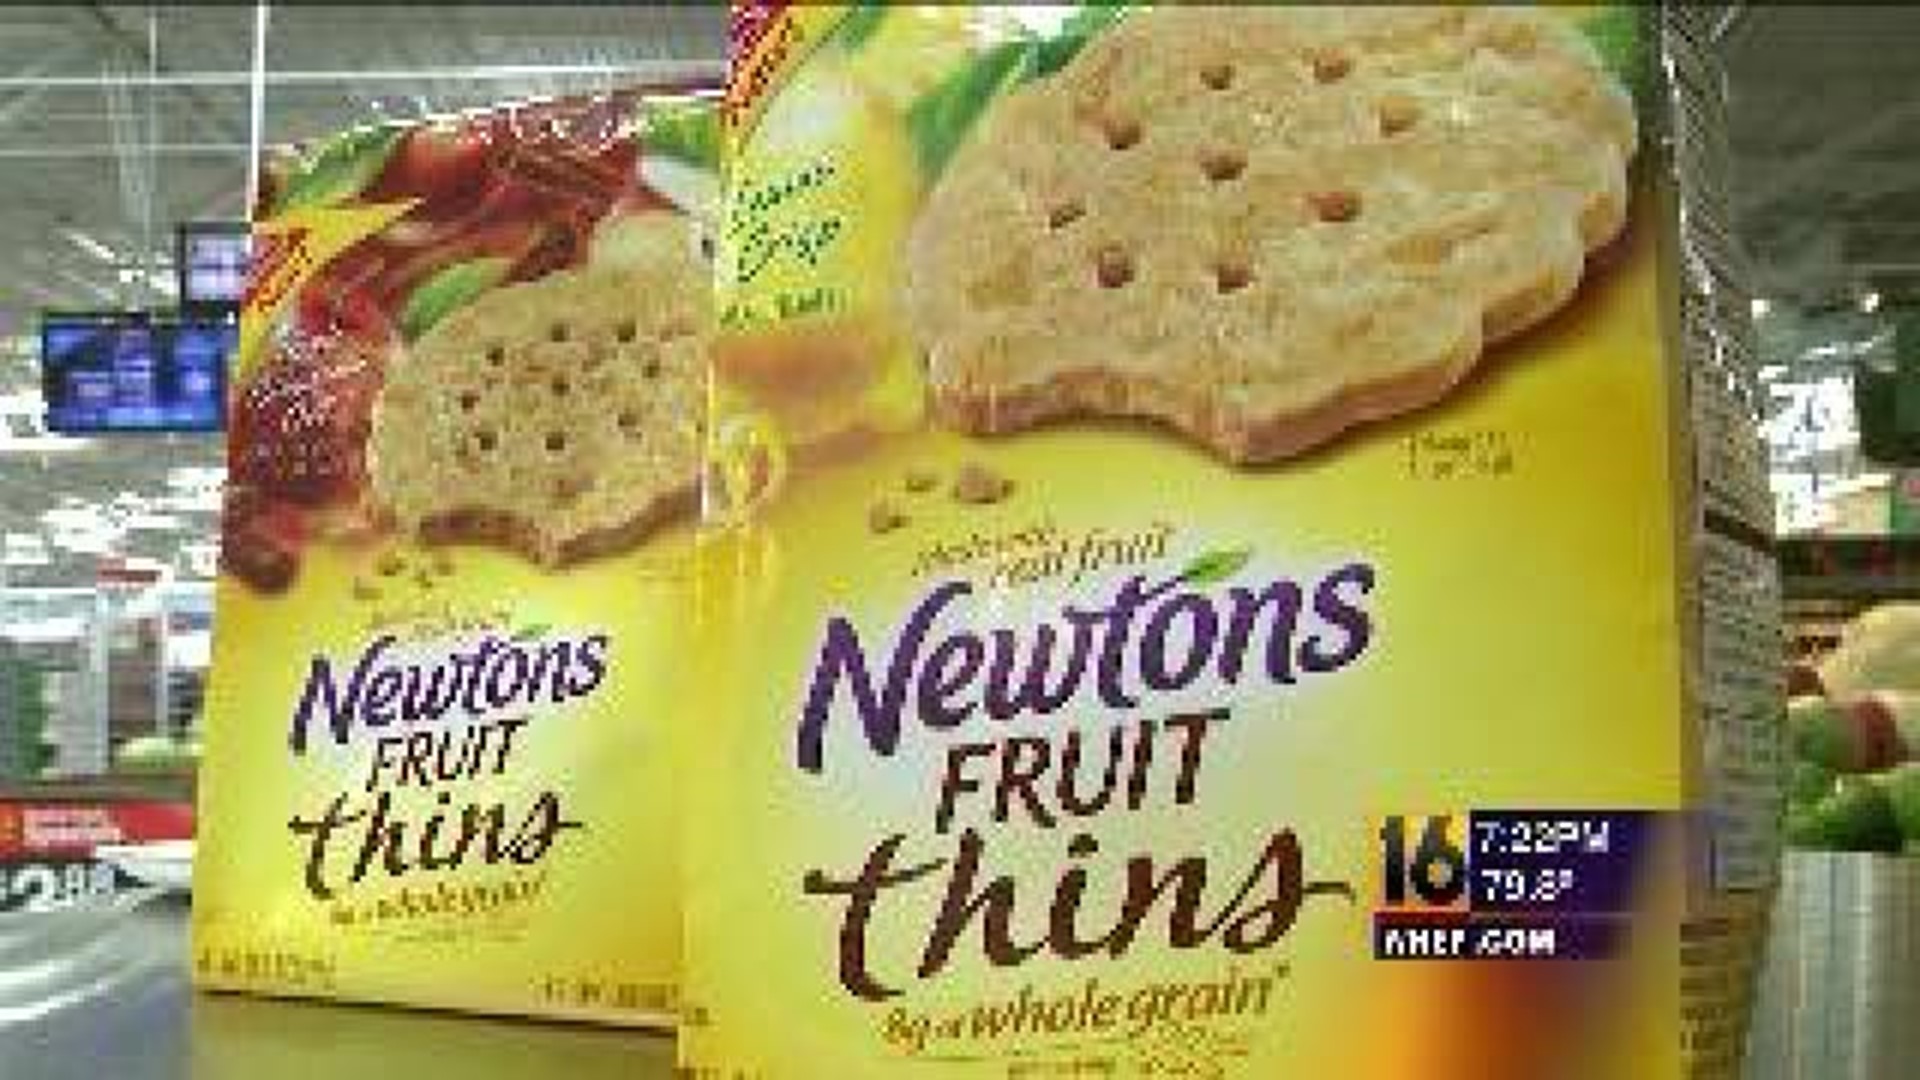 Taste Test: Newtons Fruit Thins